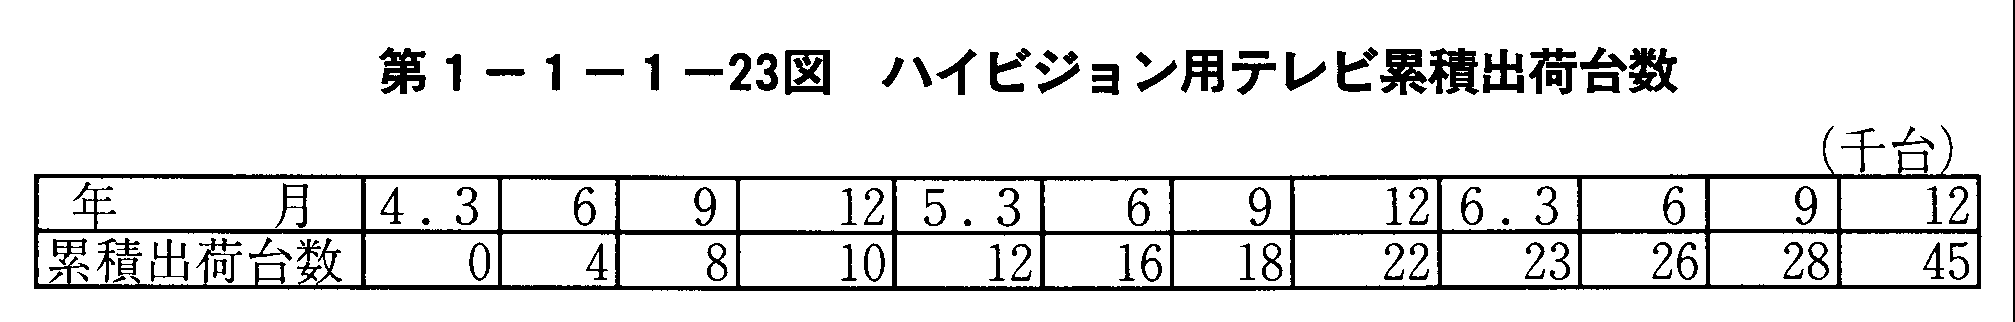 1-1-1-23 nCrWperݐϏoב䐔